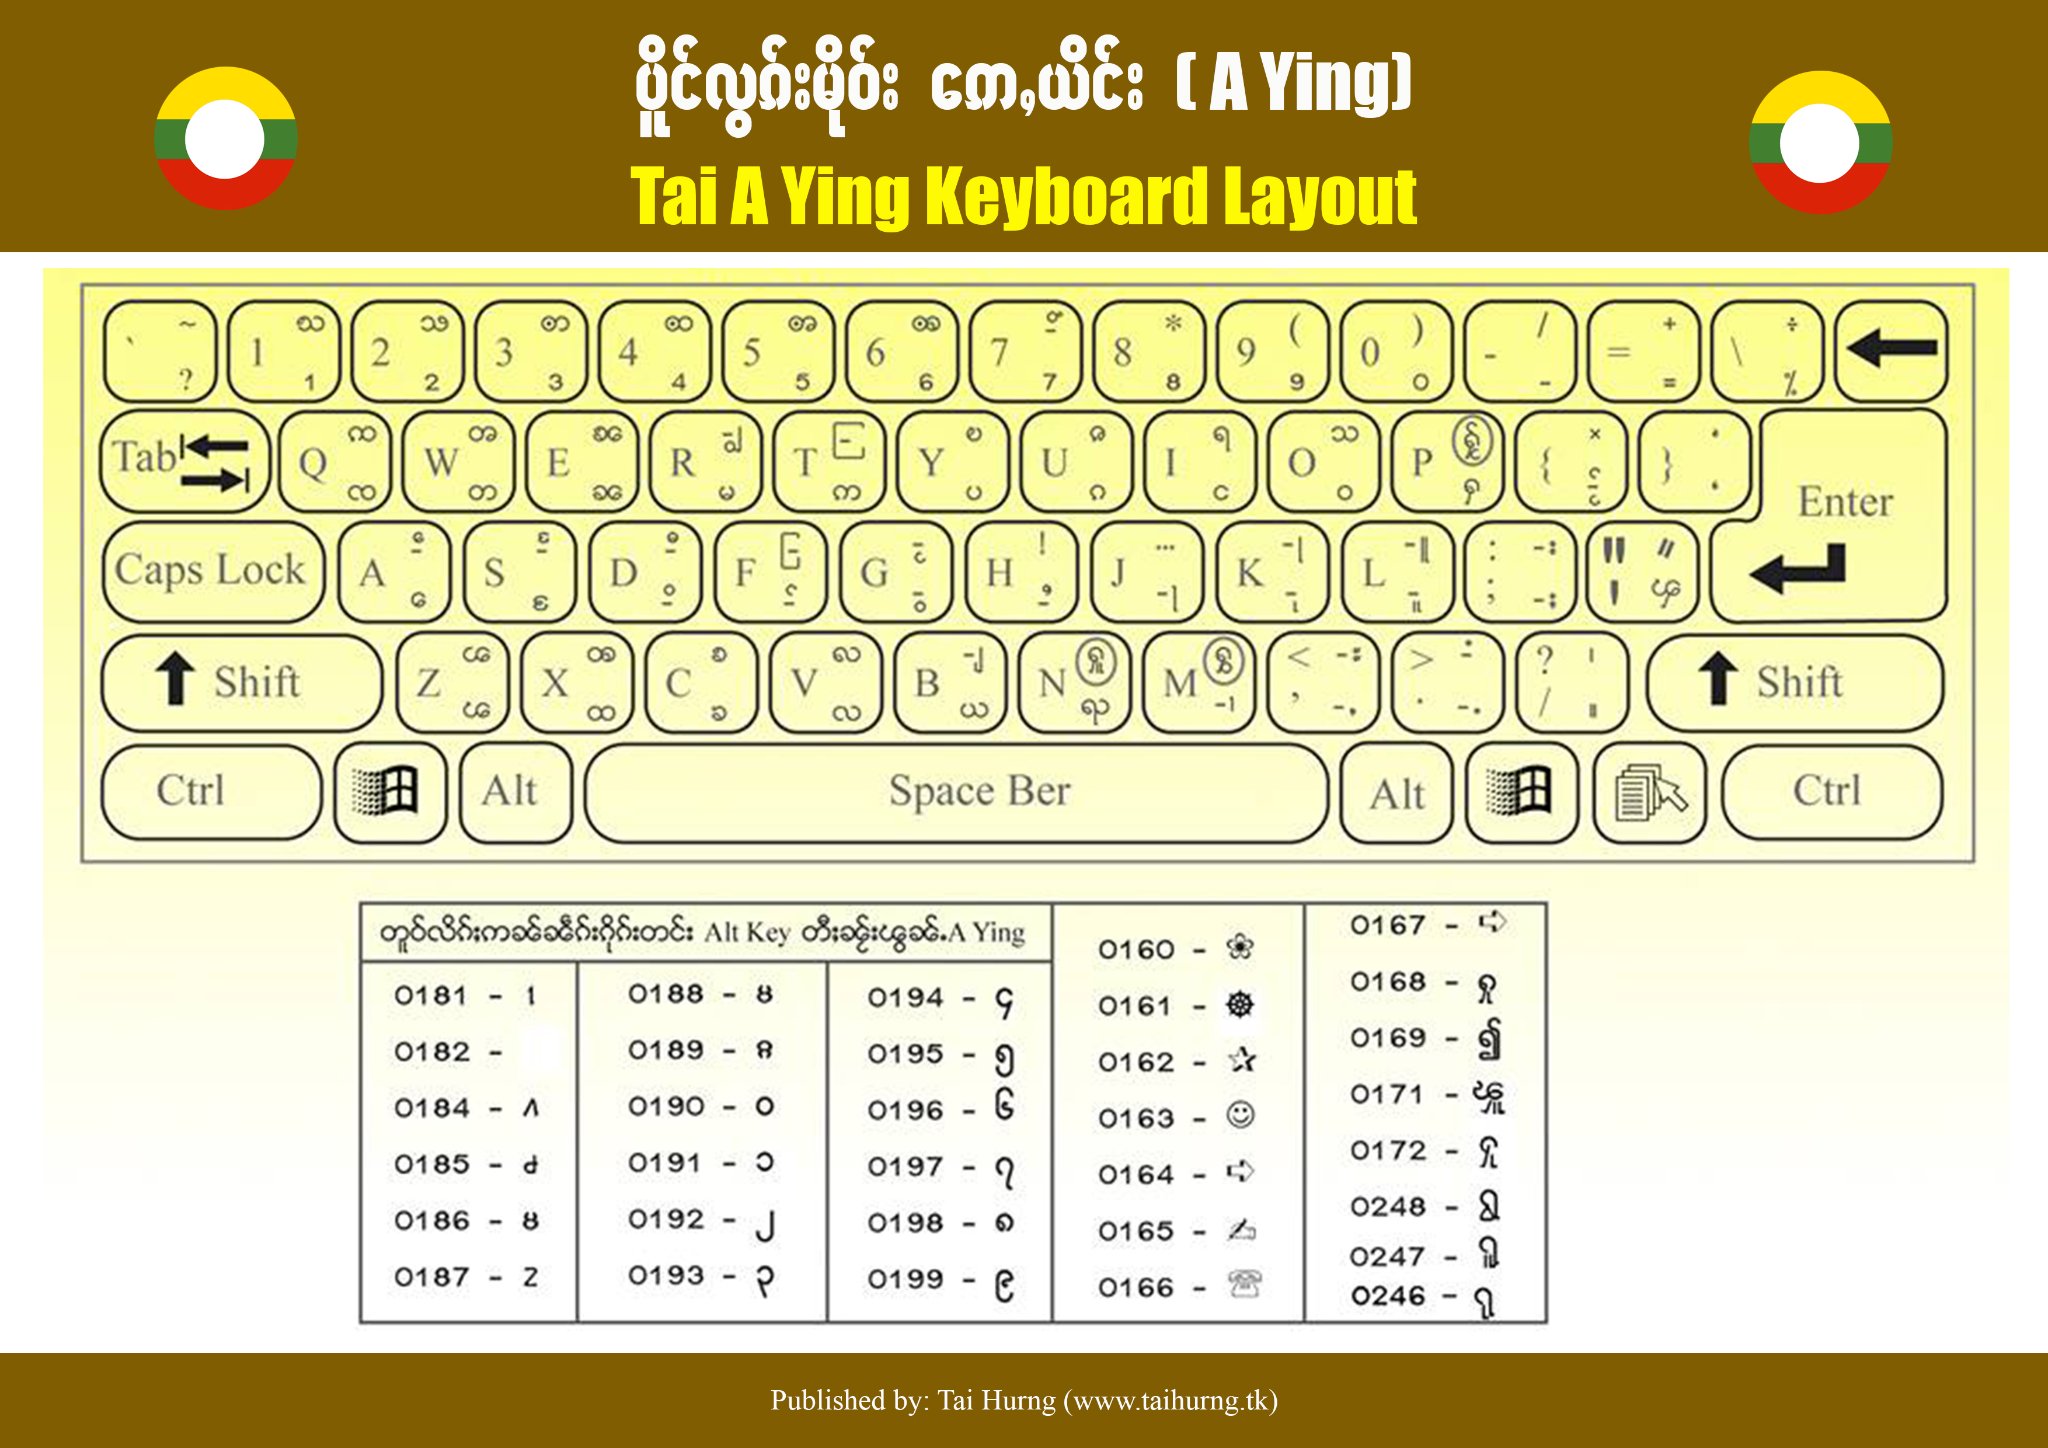 လွၵ်းမိုဝ်းဢေႇယိင်း A Ying keyboard 1